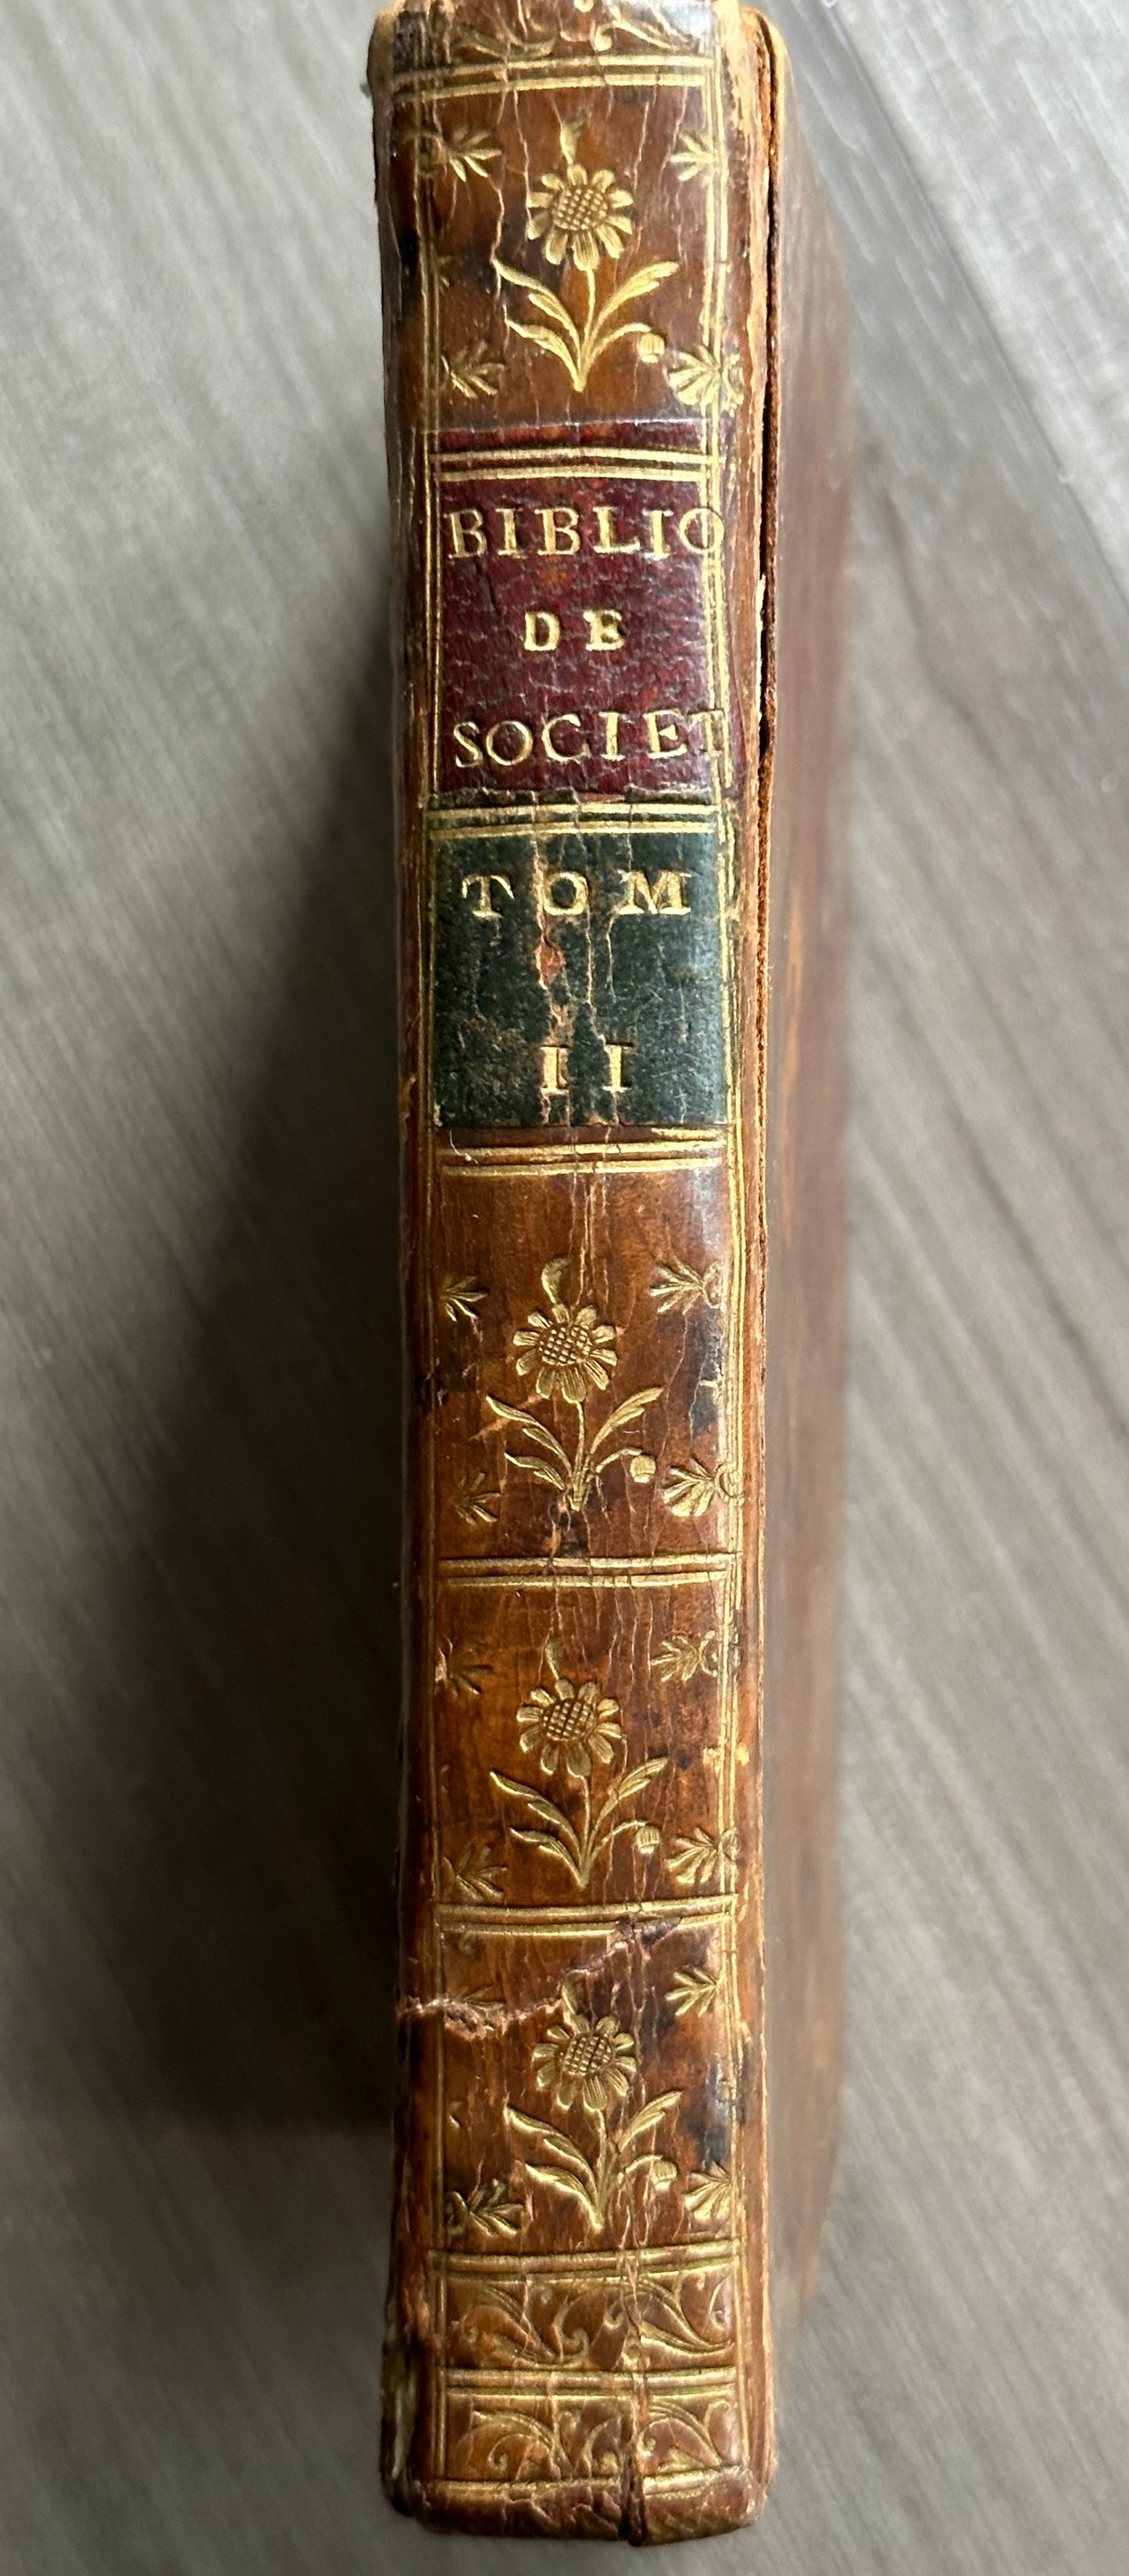 1771 Bibliothèque de Société